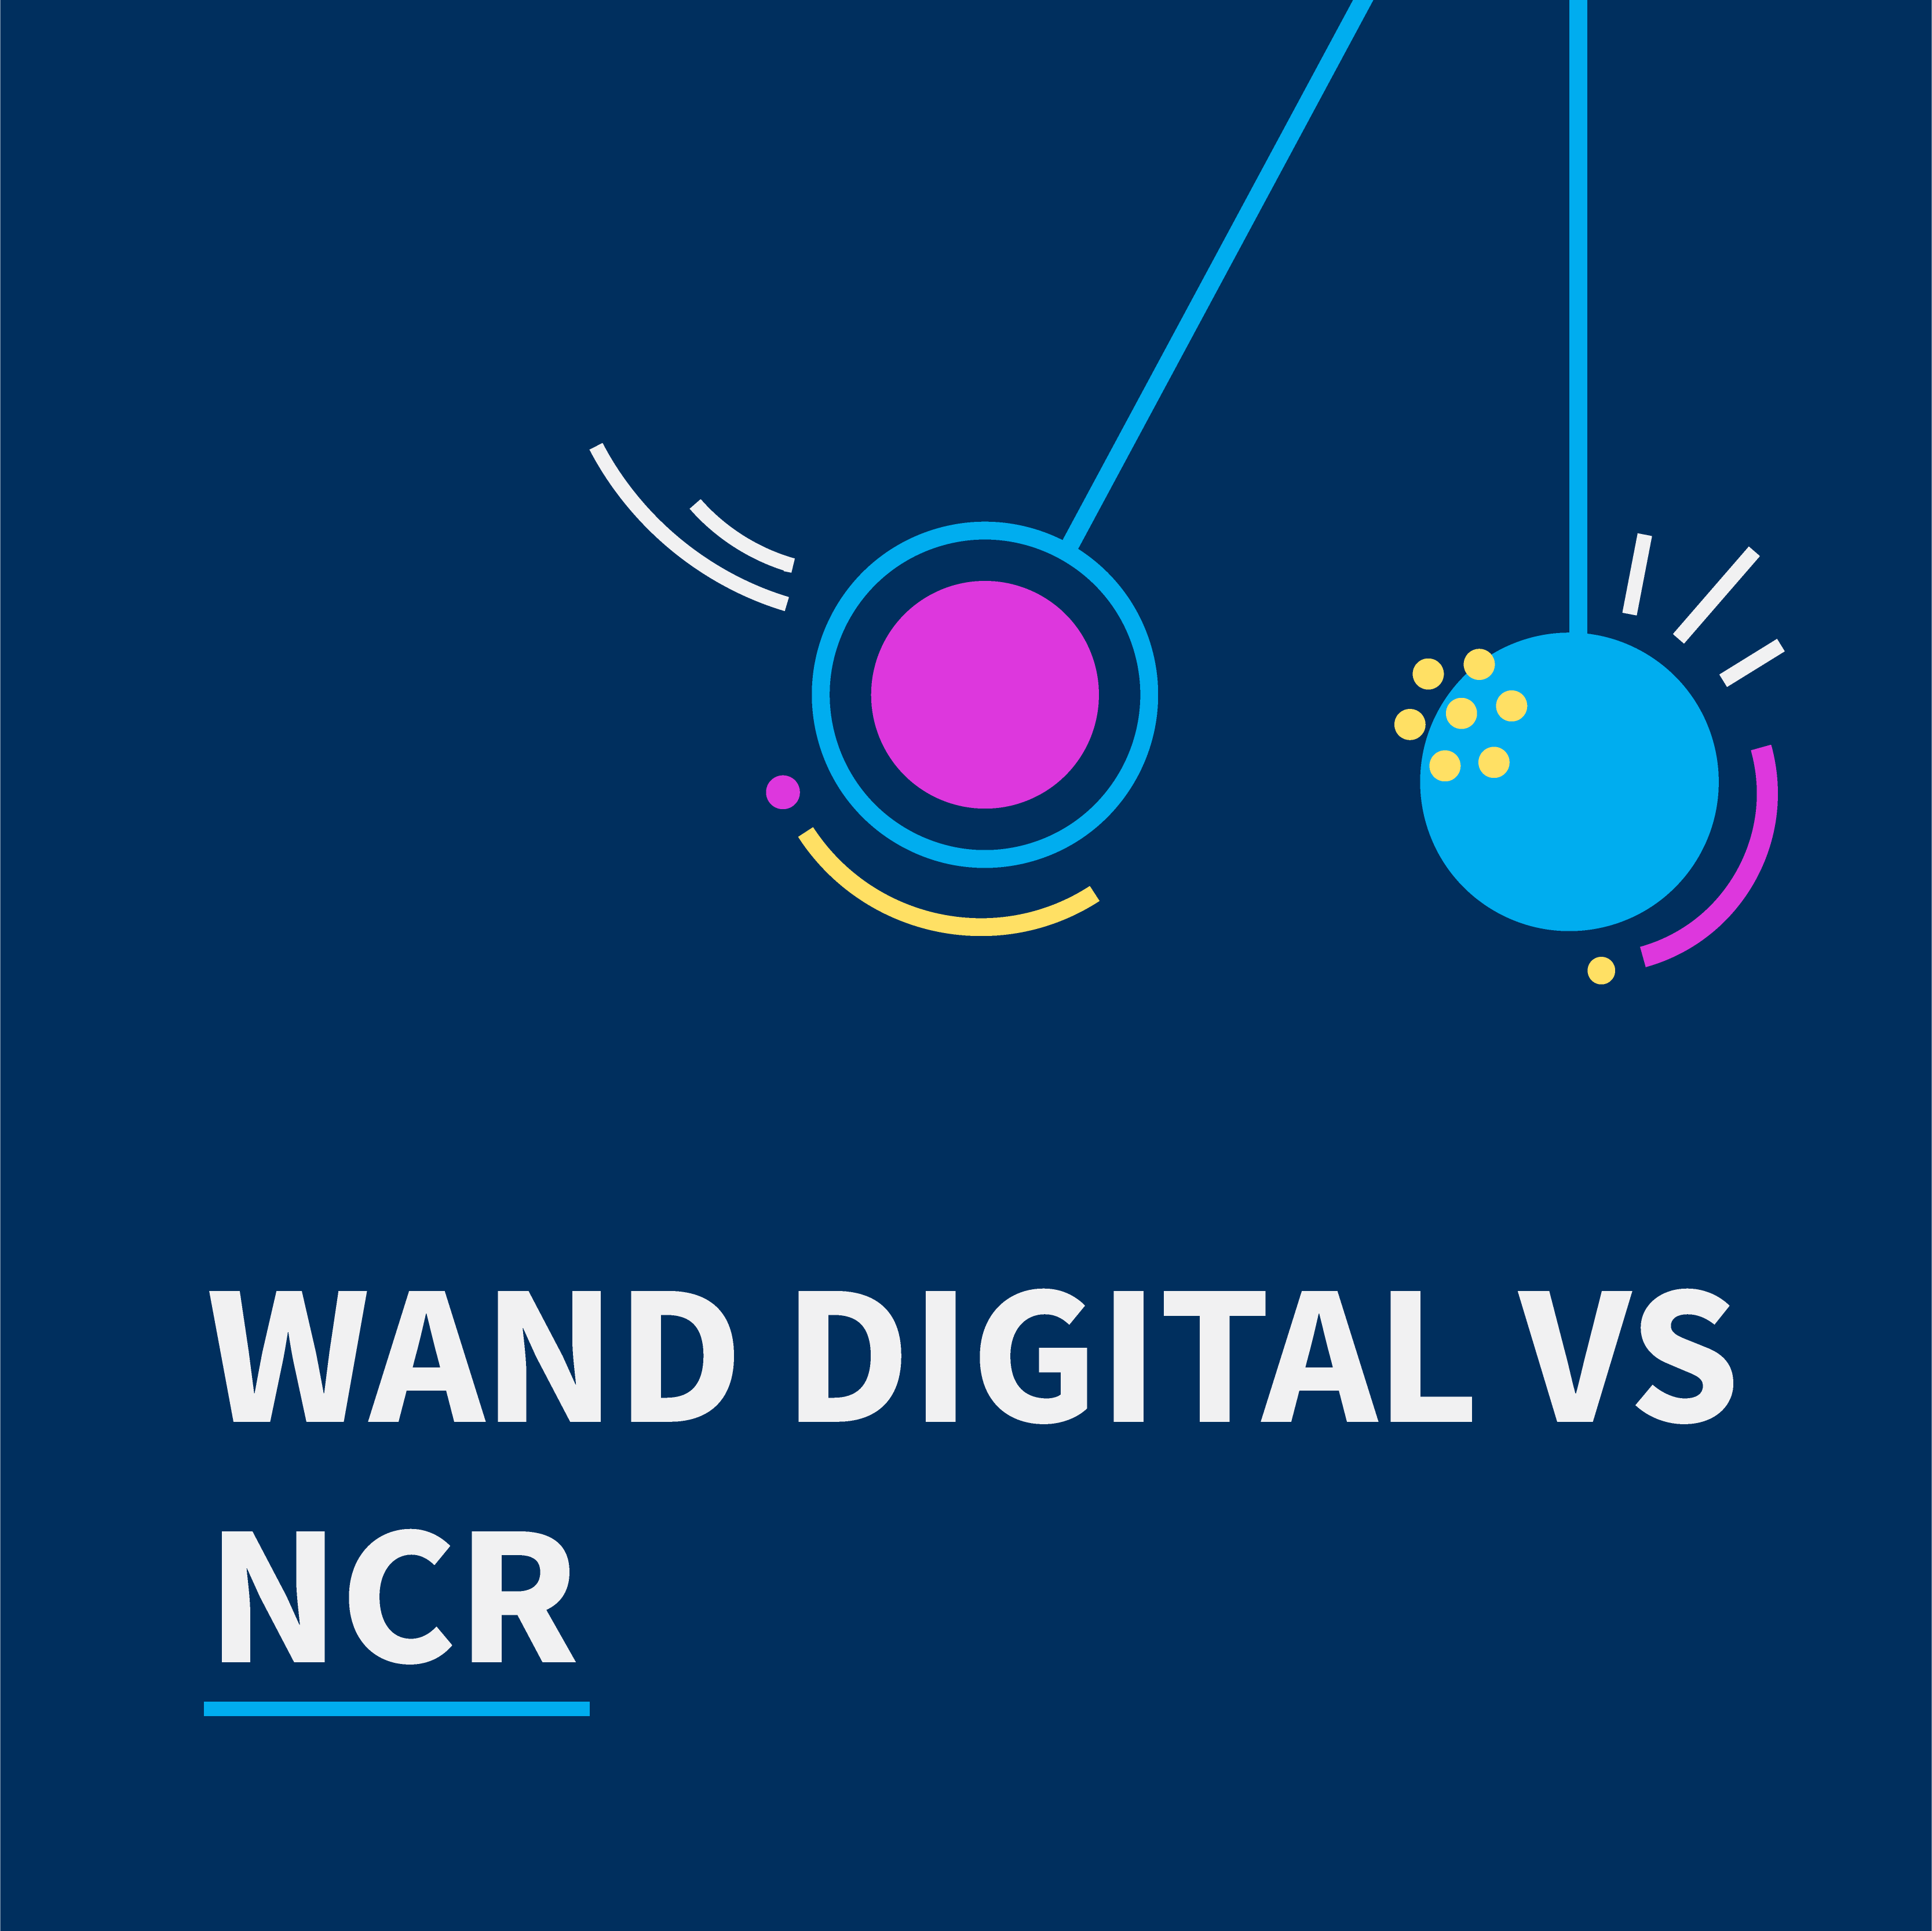 WAND Digital versus NCR